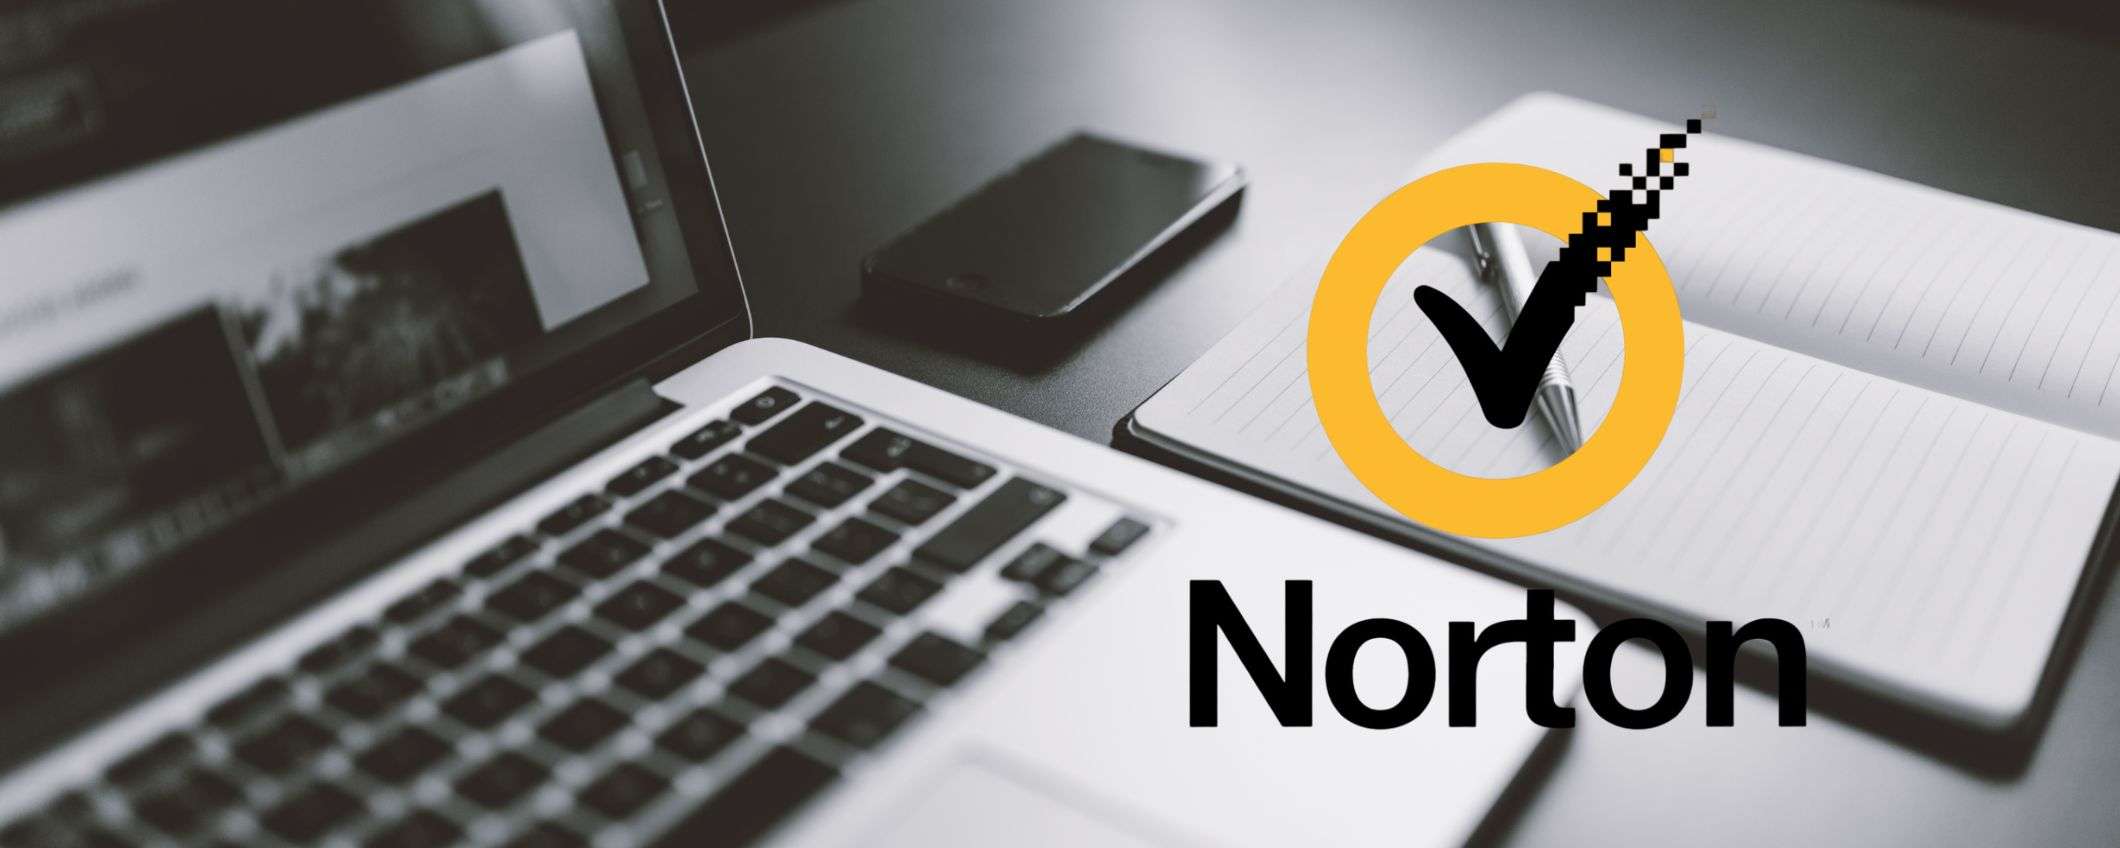 Norton Antivirus, proteggi i tuoi dispositivi a partire da 19,99€